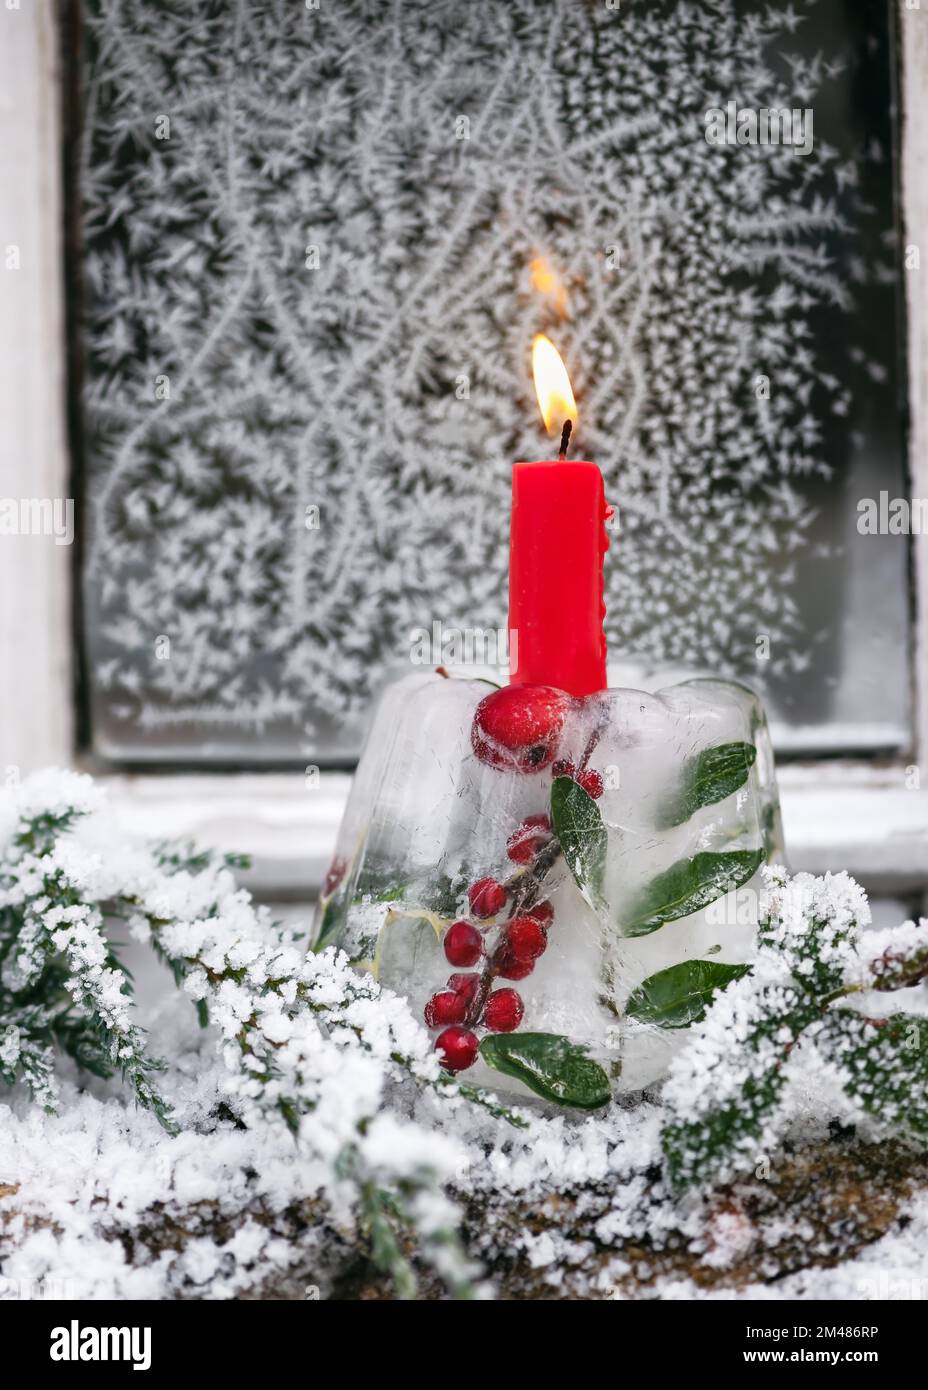 Candelabro de Navidad hecho a mano en forma de pastel hecho de hielo, ramas de bayas de acebo rojo con vela ardiente frente a la ventana cubierta de escarcha. Foto de stock